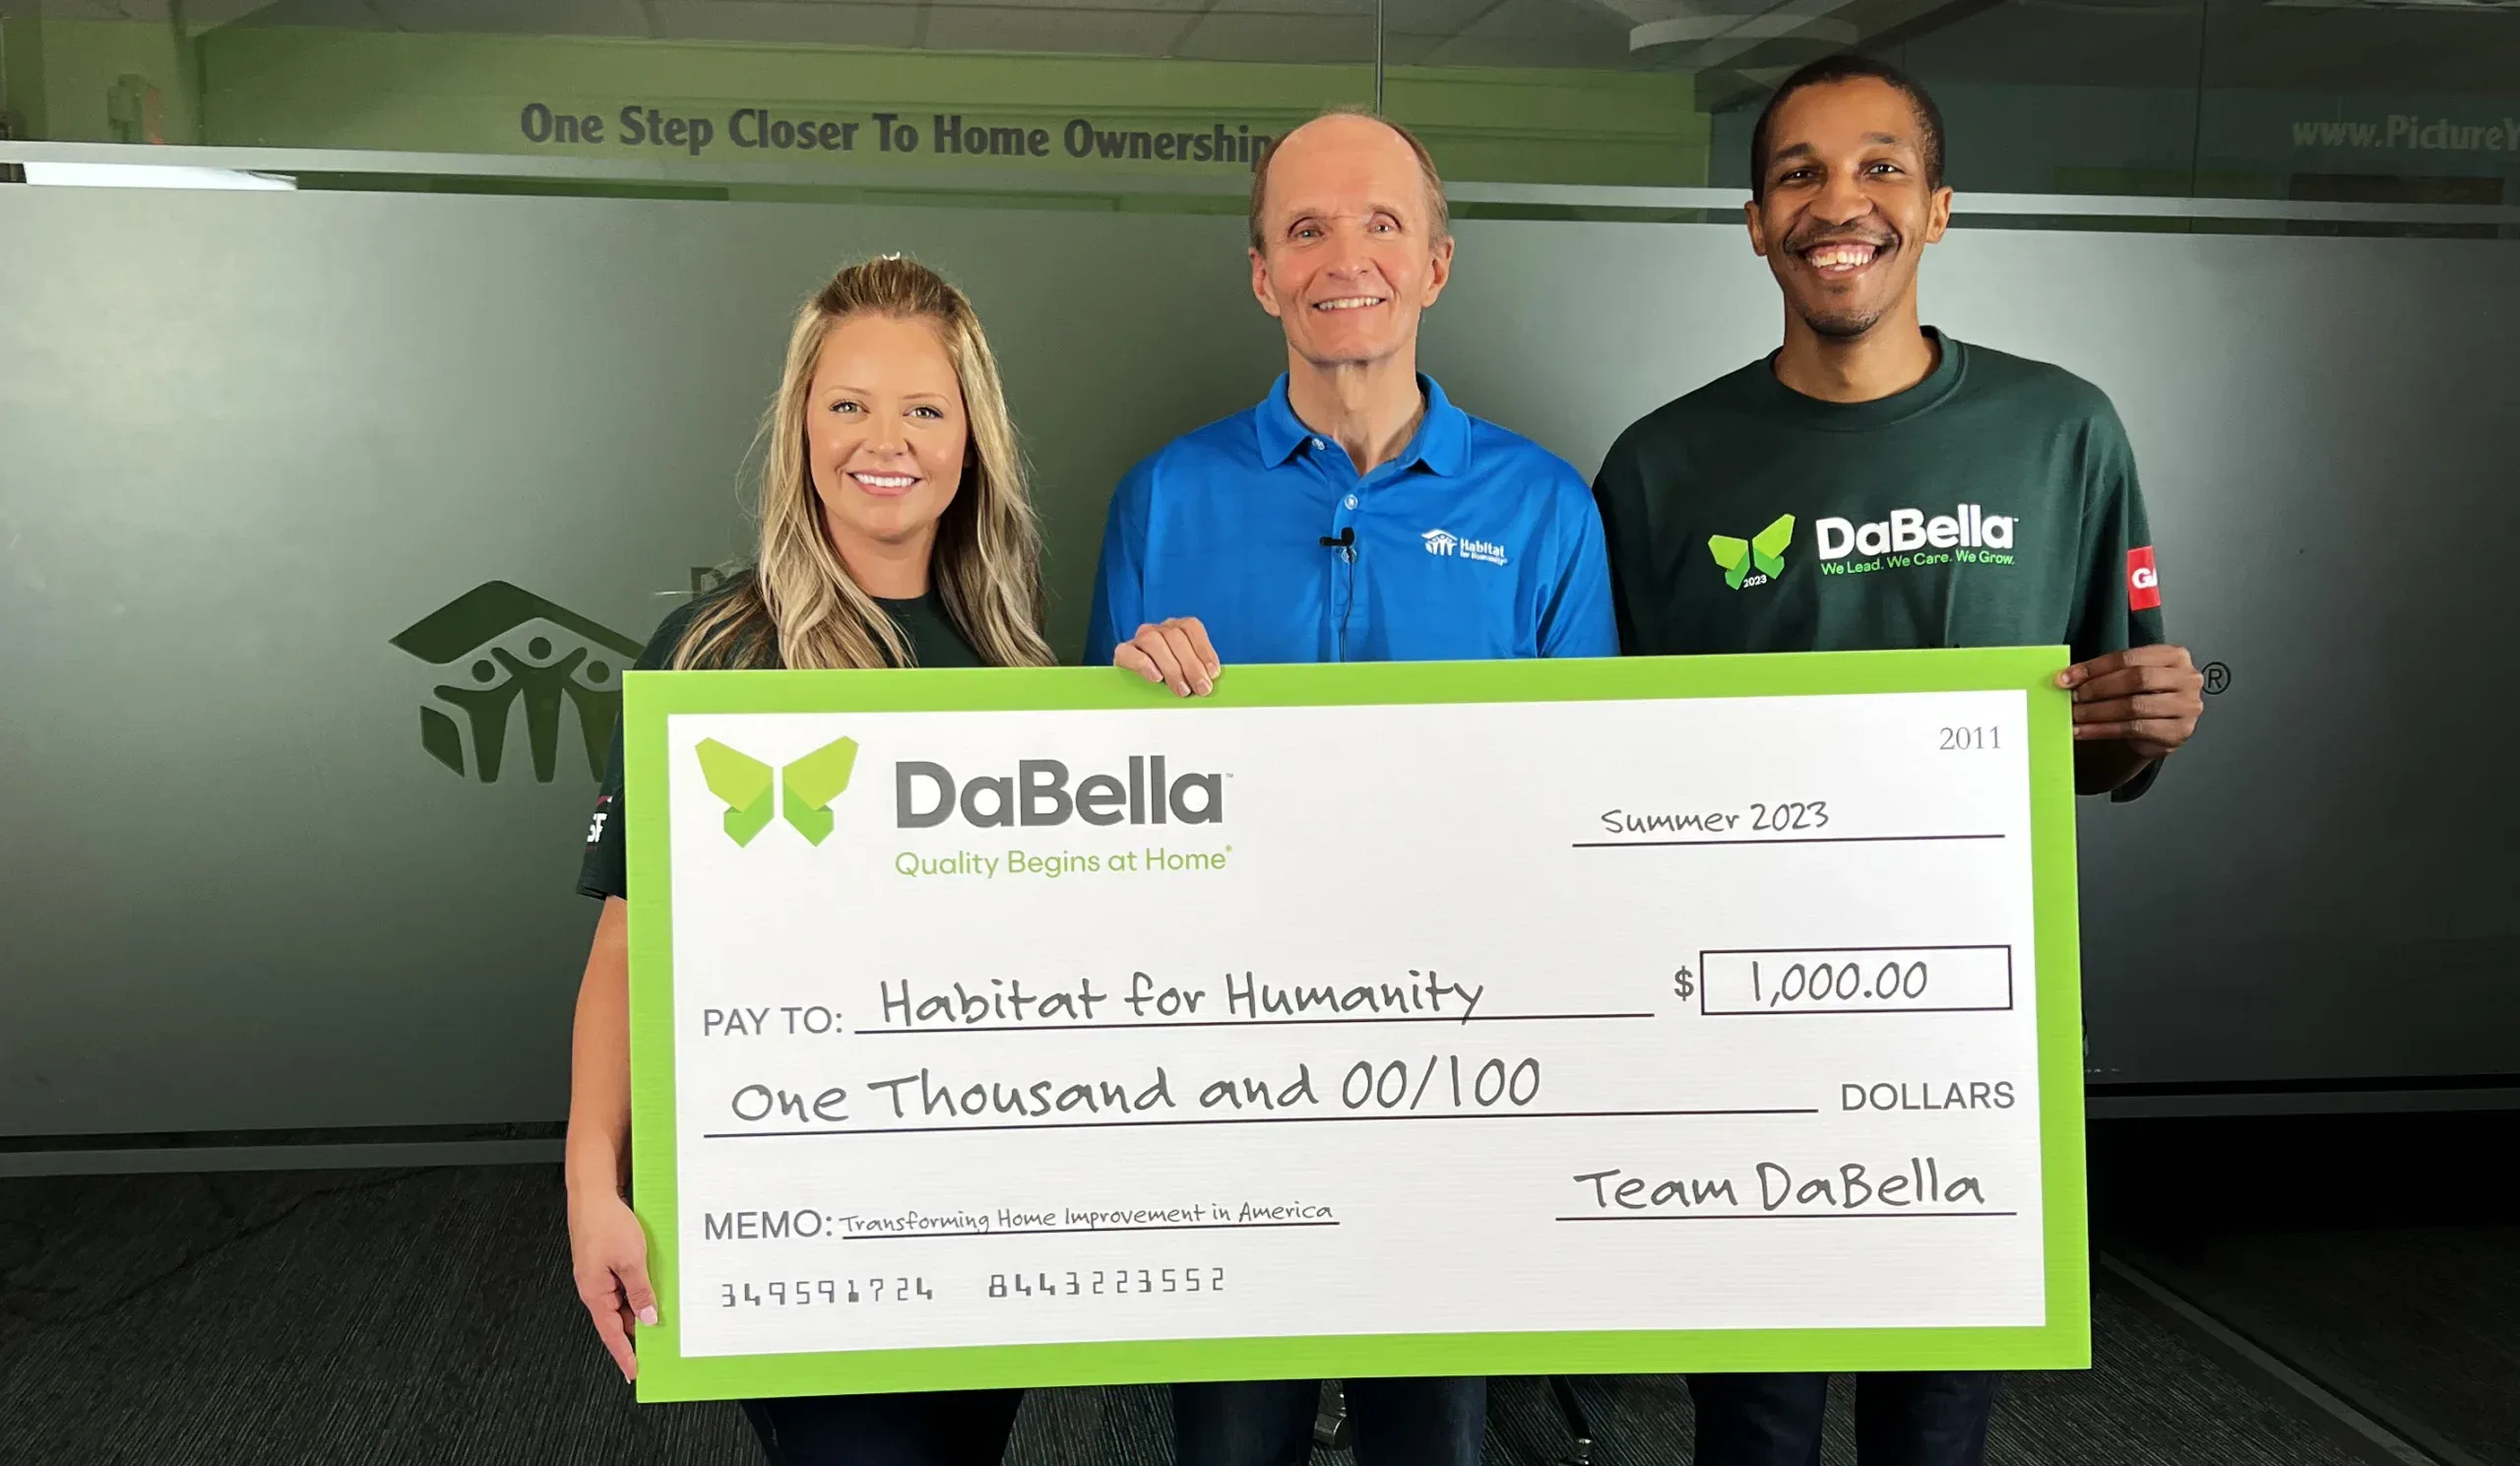 DaBella Dallas dona un cheque de 1.000 dólares a Habitat for Humanity